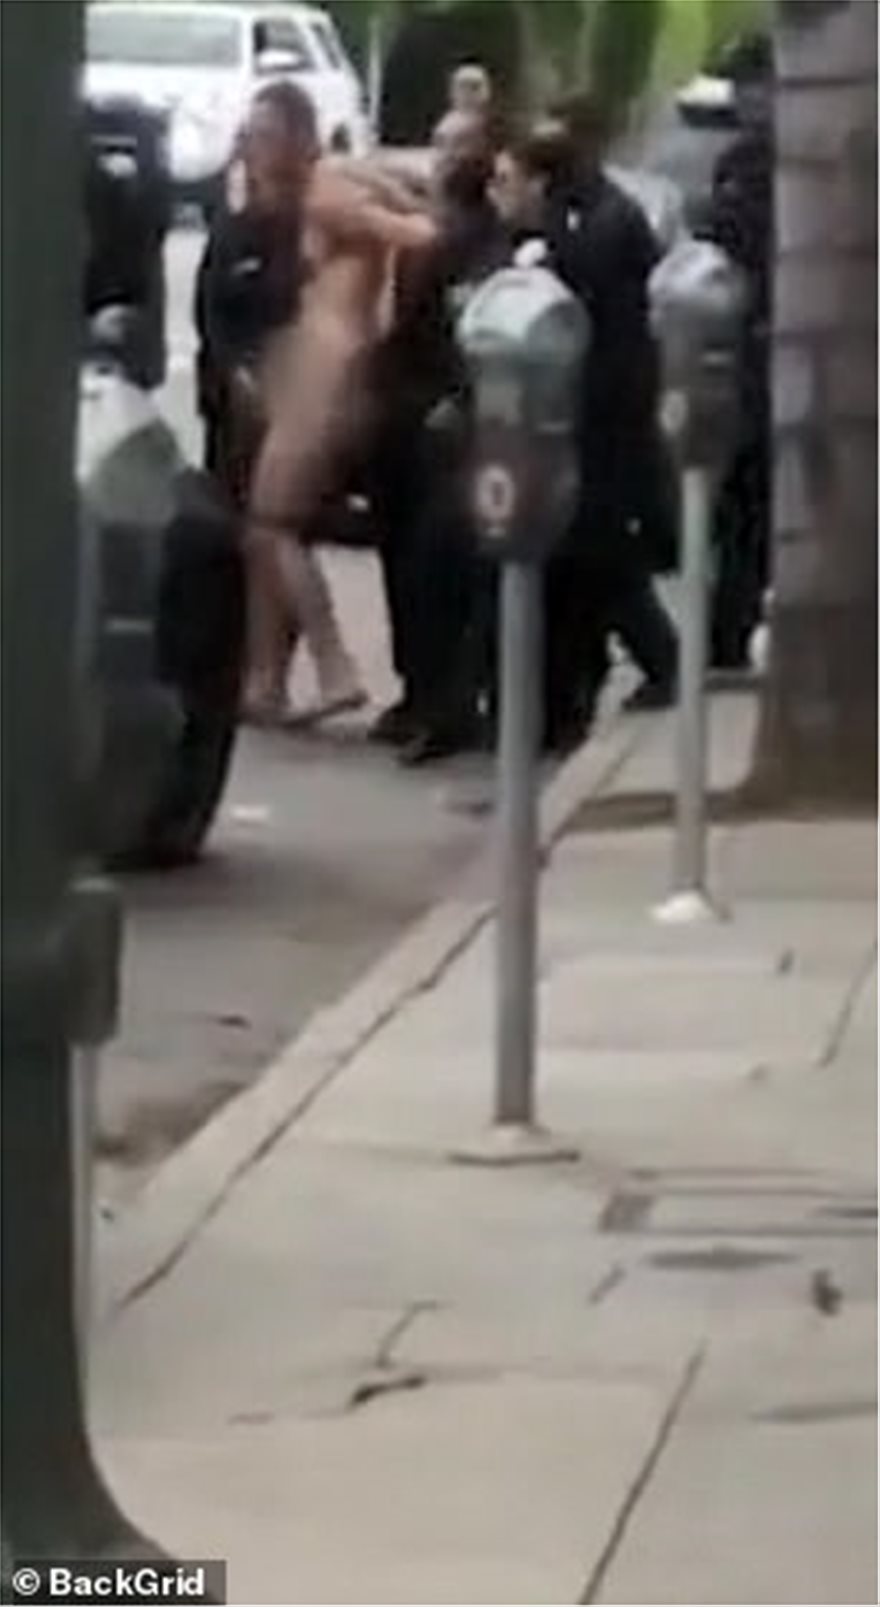 ΒΙΝΤΕΟ.Μέγκαν Μαρκλ: Συνελήφθη ο ανιψιός της γυμνός και ουρλιάζοντας στους δρόμους του Χόλιγουντ - Φωτογραφία 2